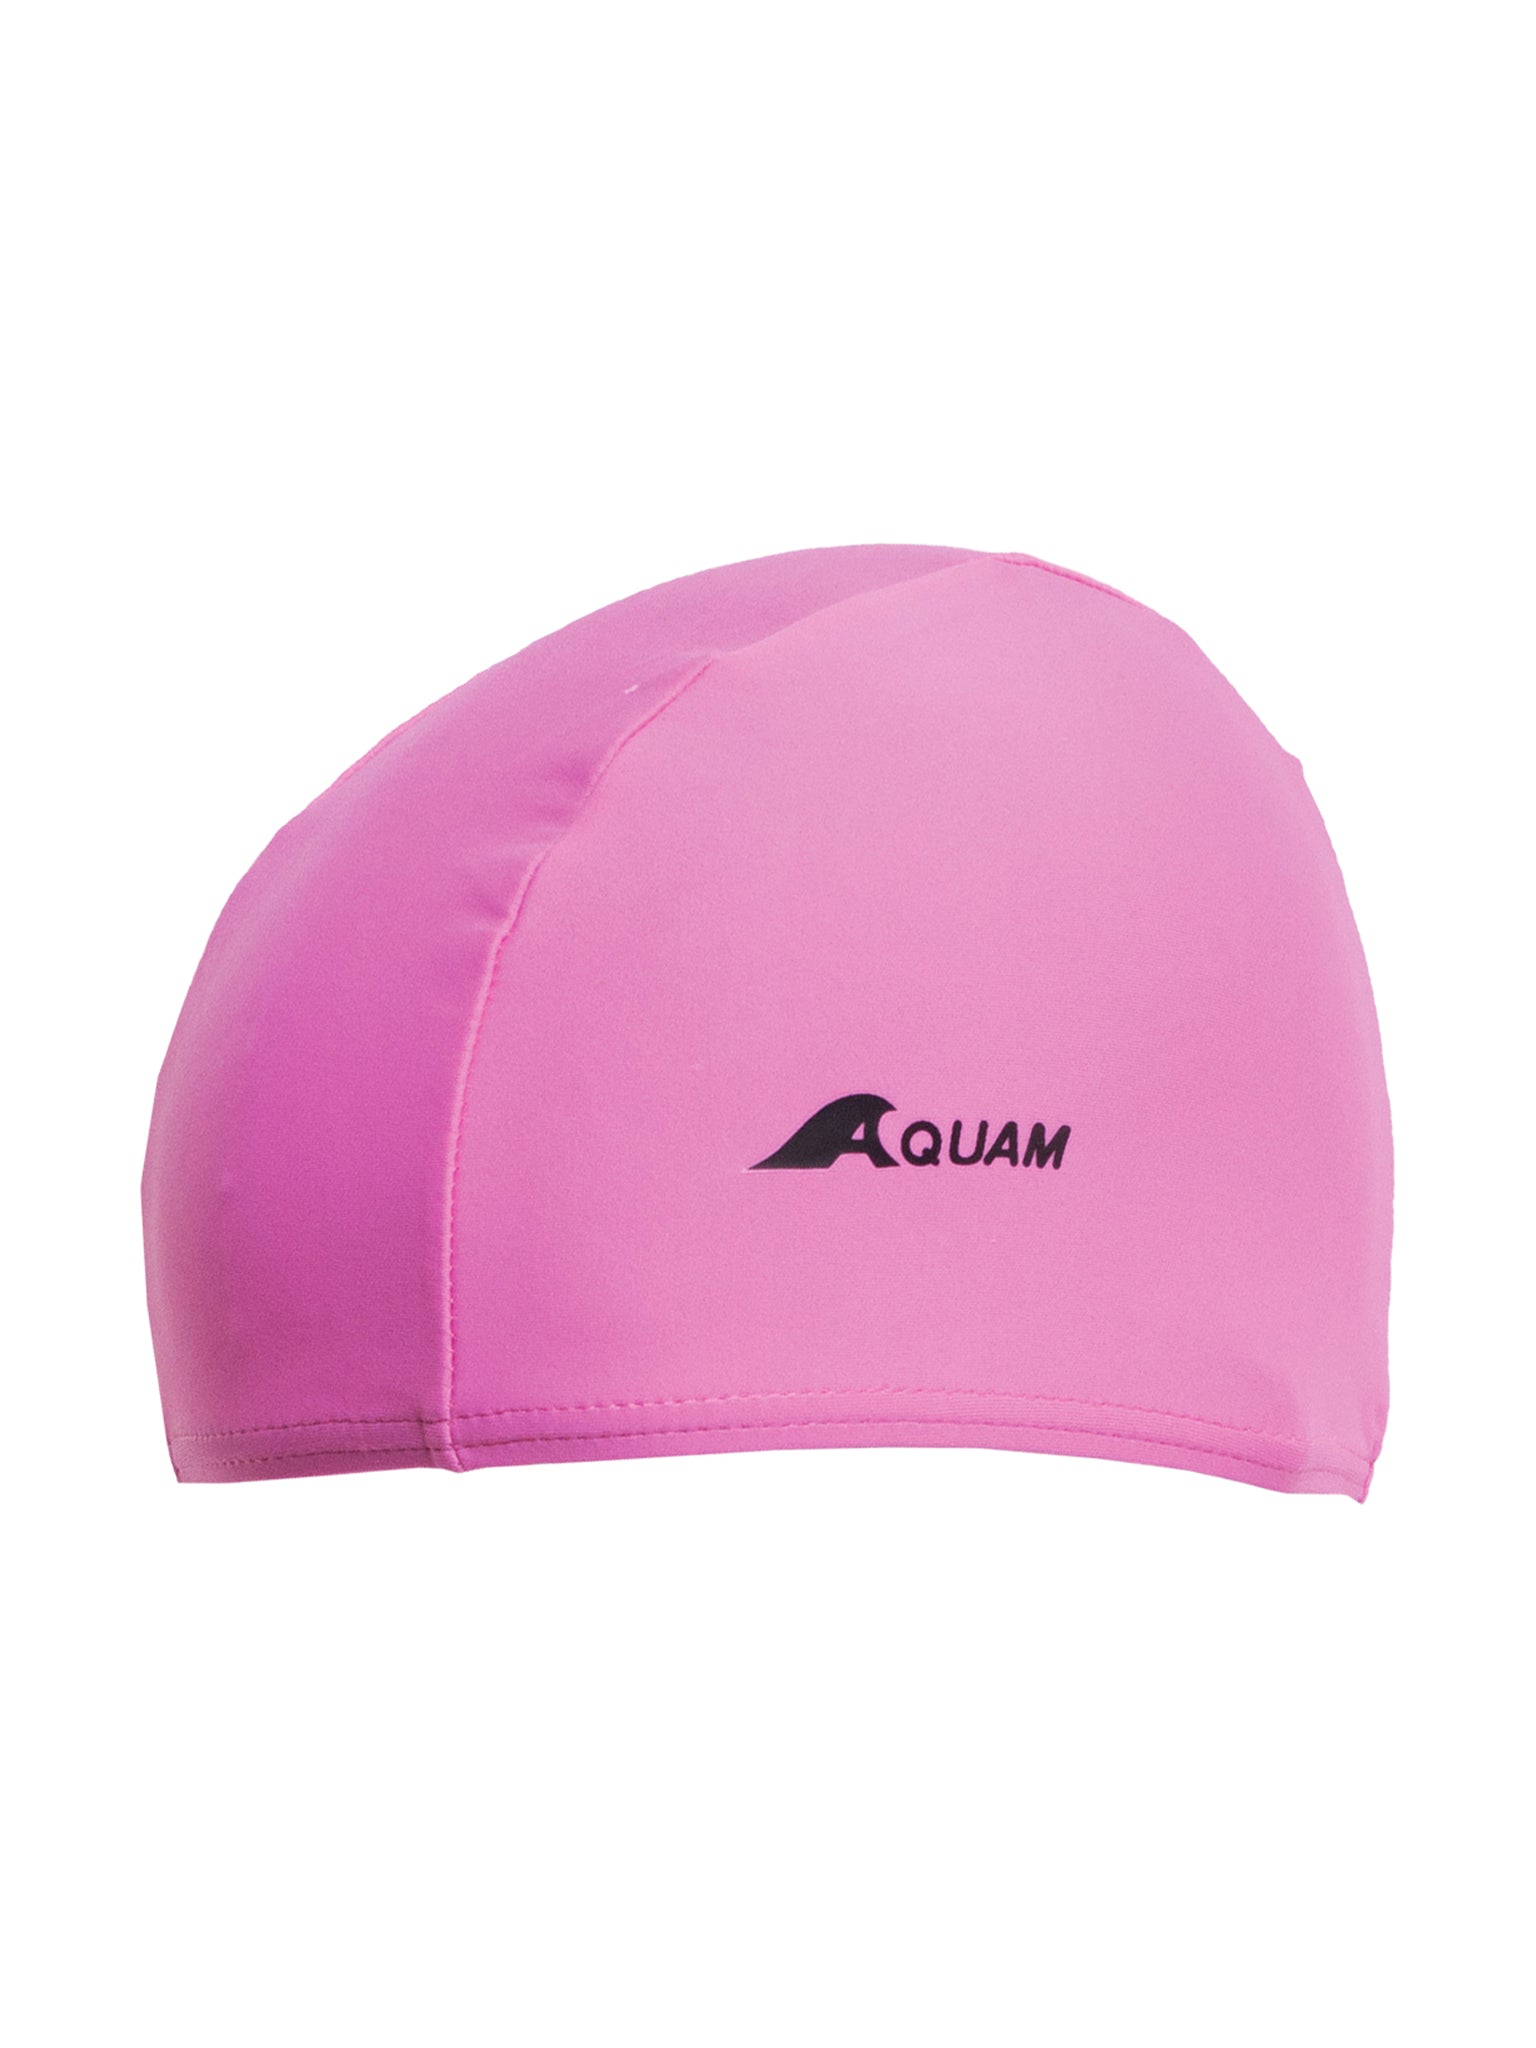 Junior Lycra Swim Cap - Pink